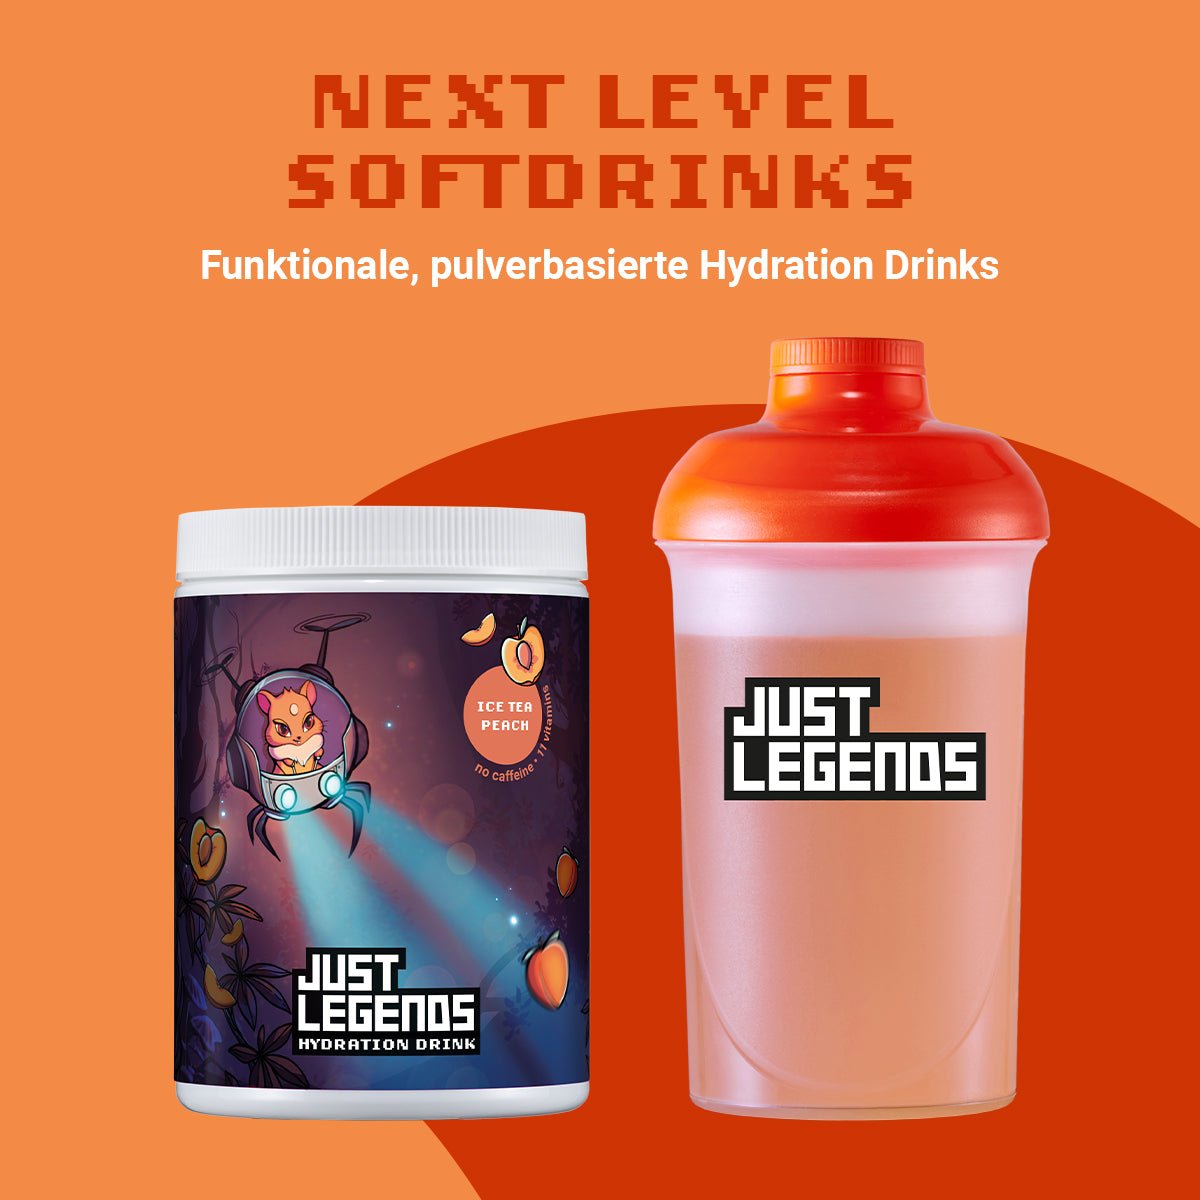 Just Legends Hydration Drink Ice Tea Peach | Funktionaler, veganer Hydration Drink auf Pulverbasis ohne Zucker, mit wenig Kalorien, vielen Vitaminen und natürlichen Aromen.